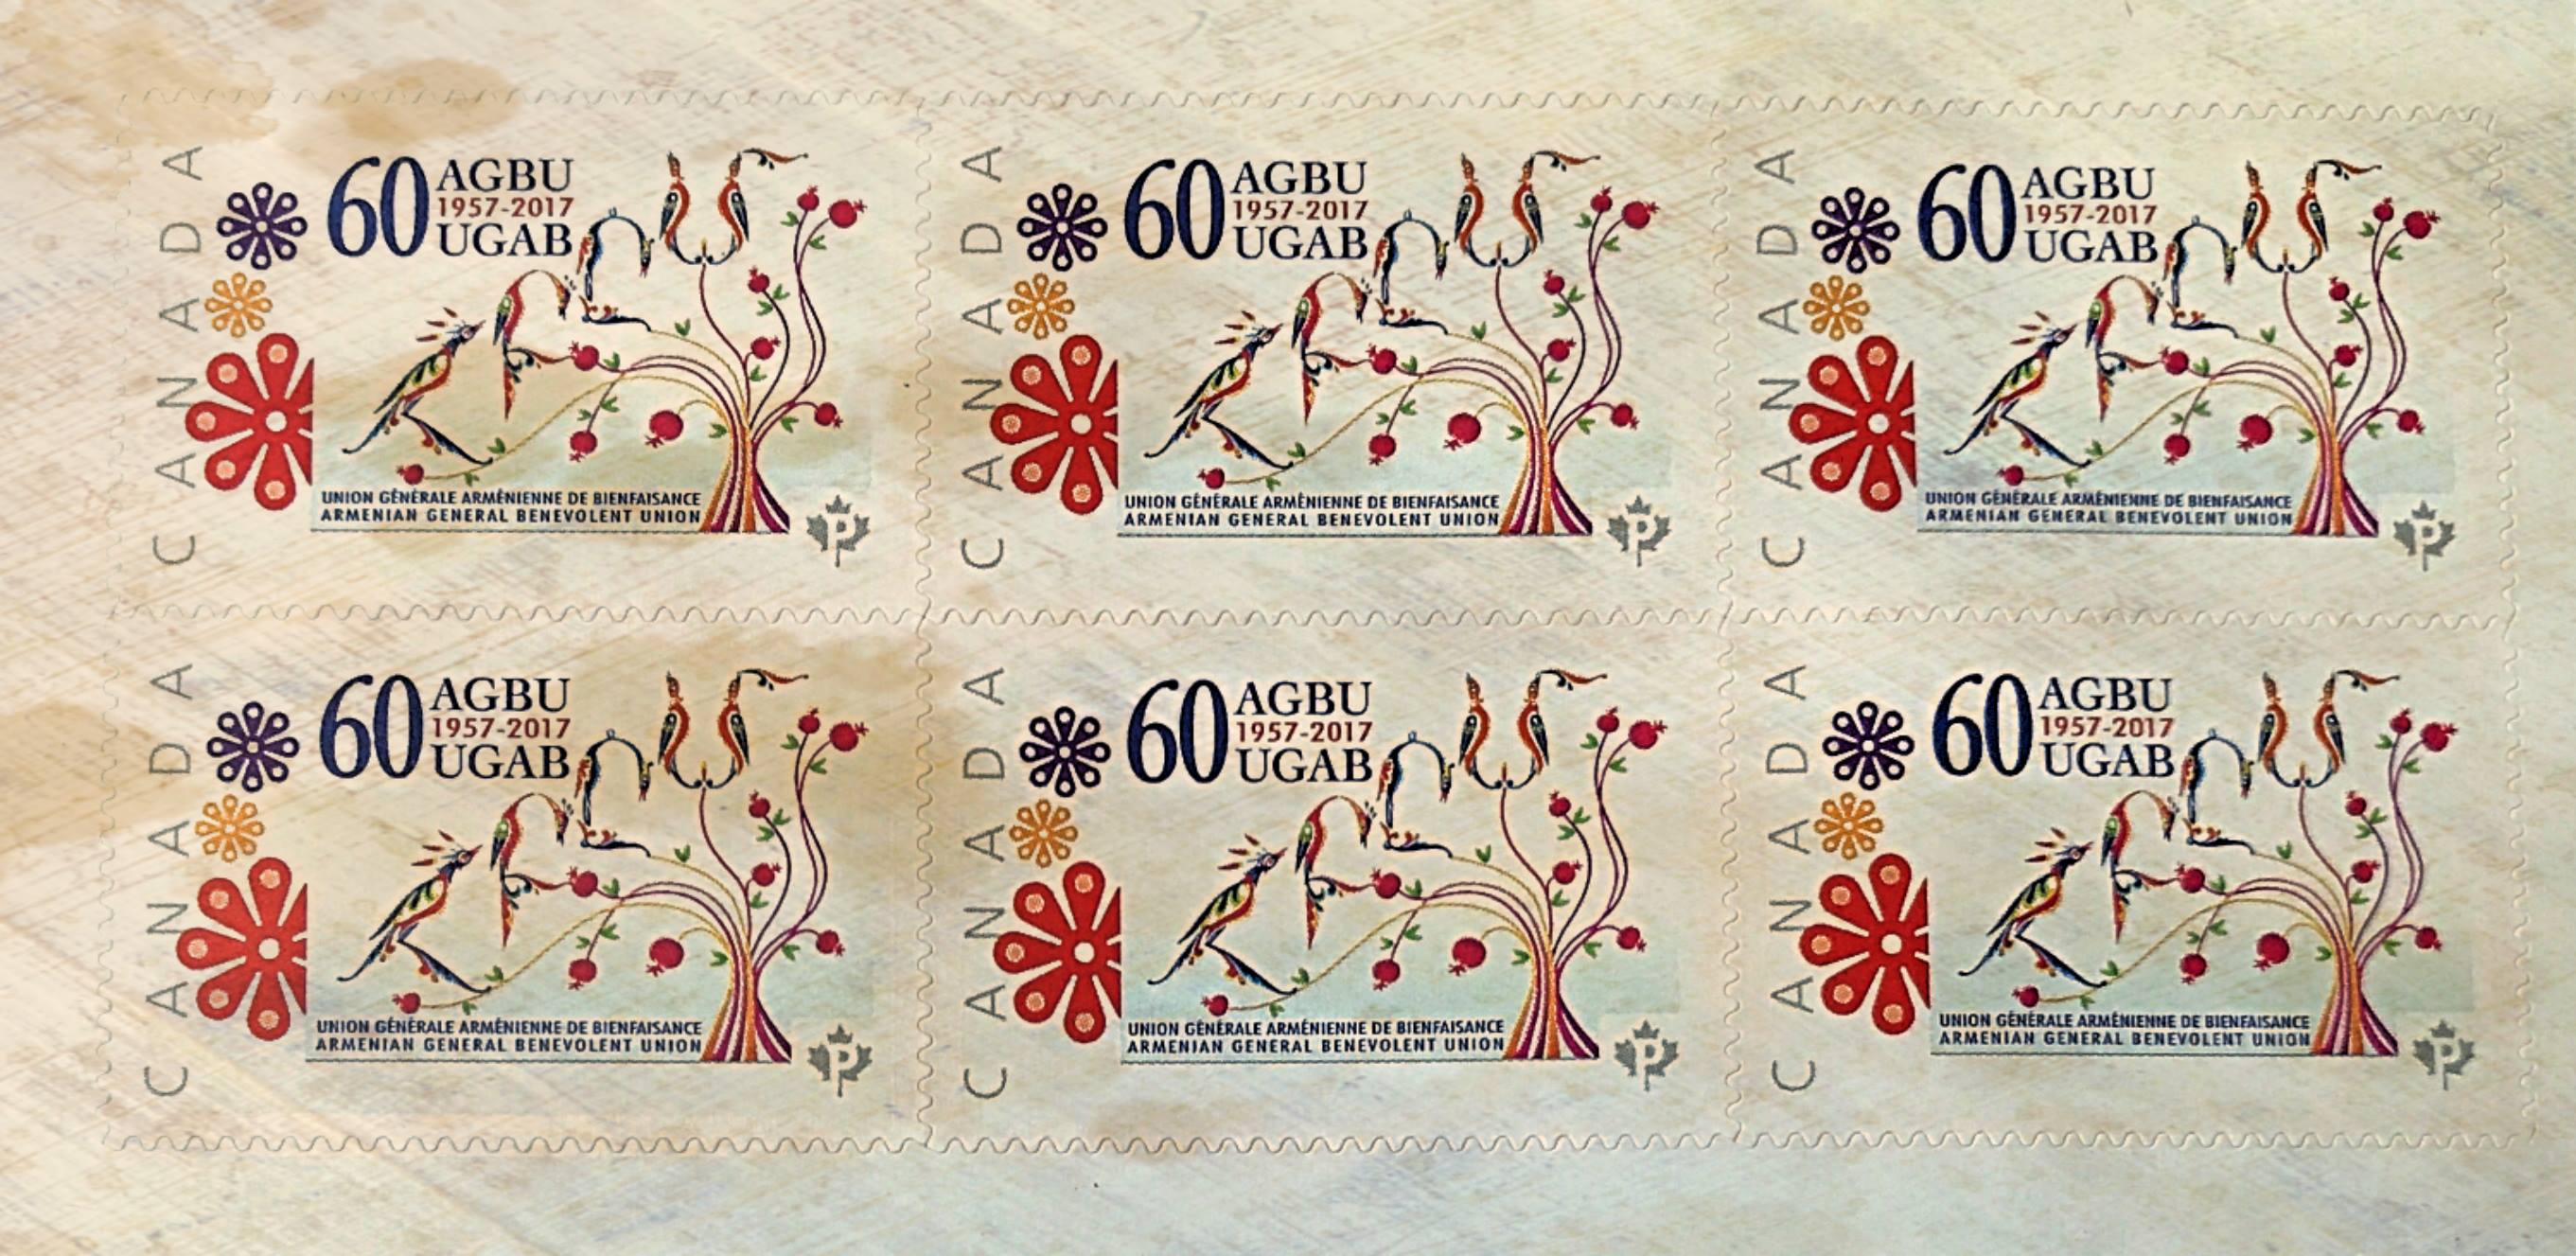 Dévoilement par Postes Canada d’un timbre marquant le 60e anniversaire de l’UGAB au Canada | AGBU 60th Anniversary Stamps by Canada Post